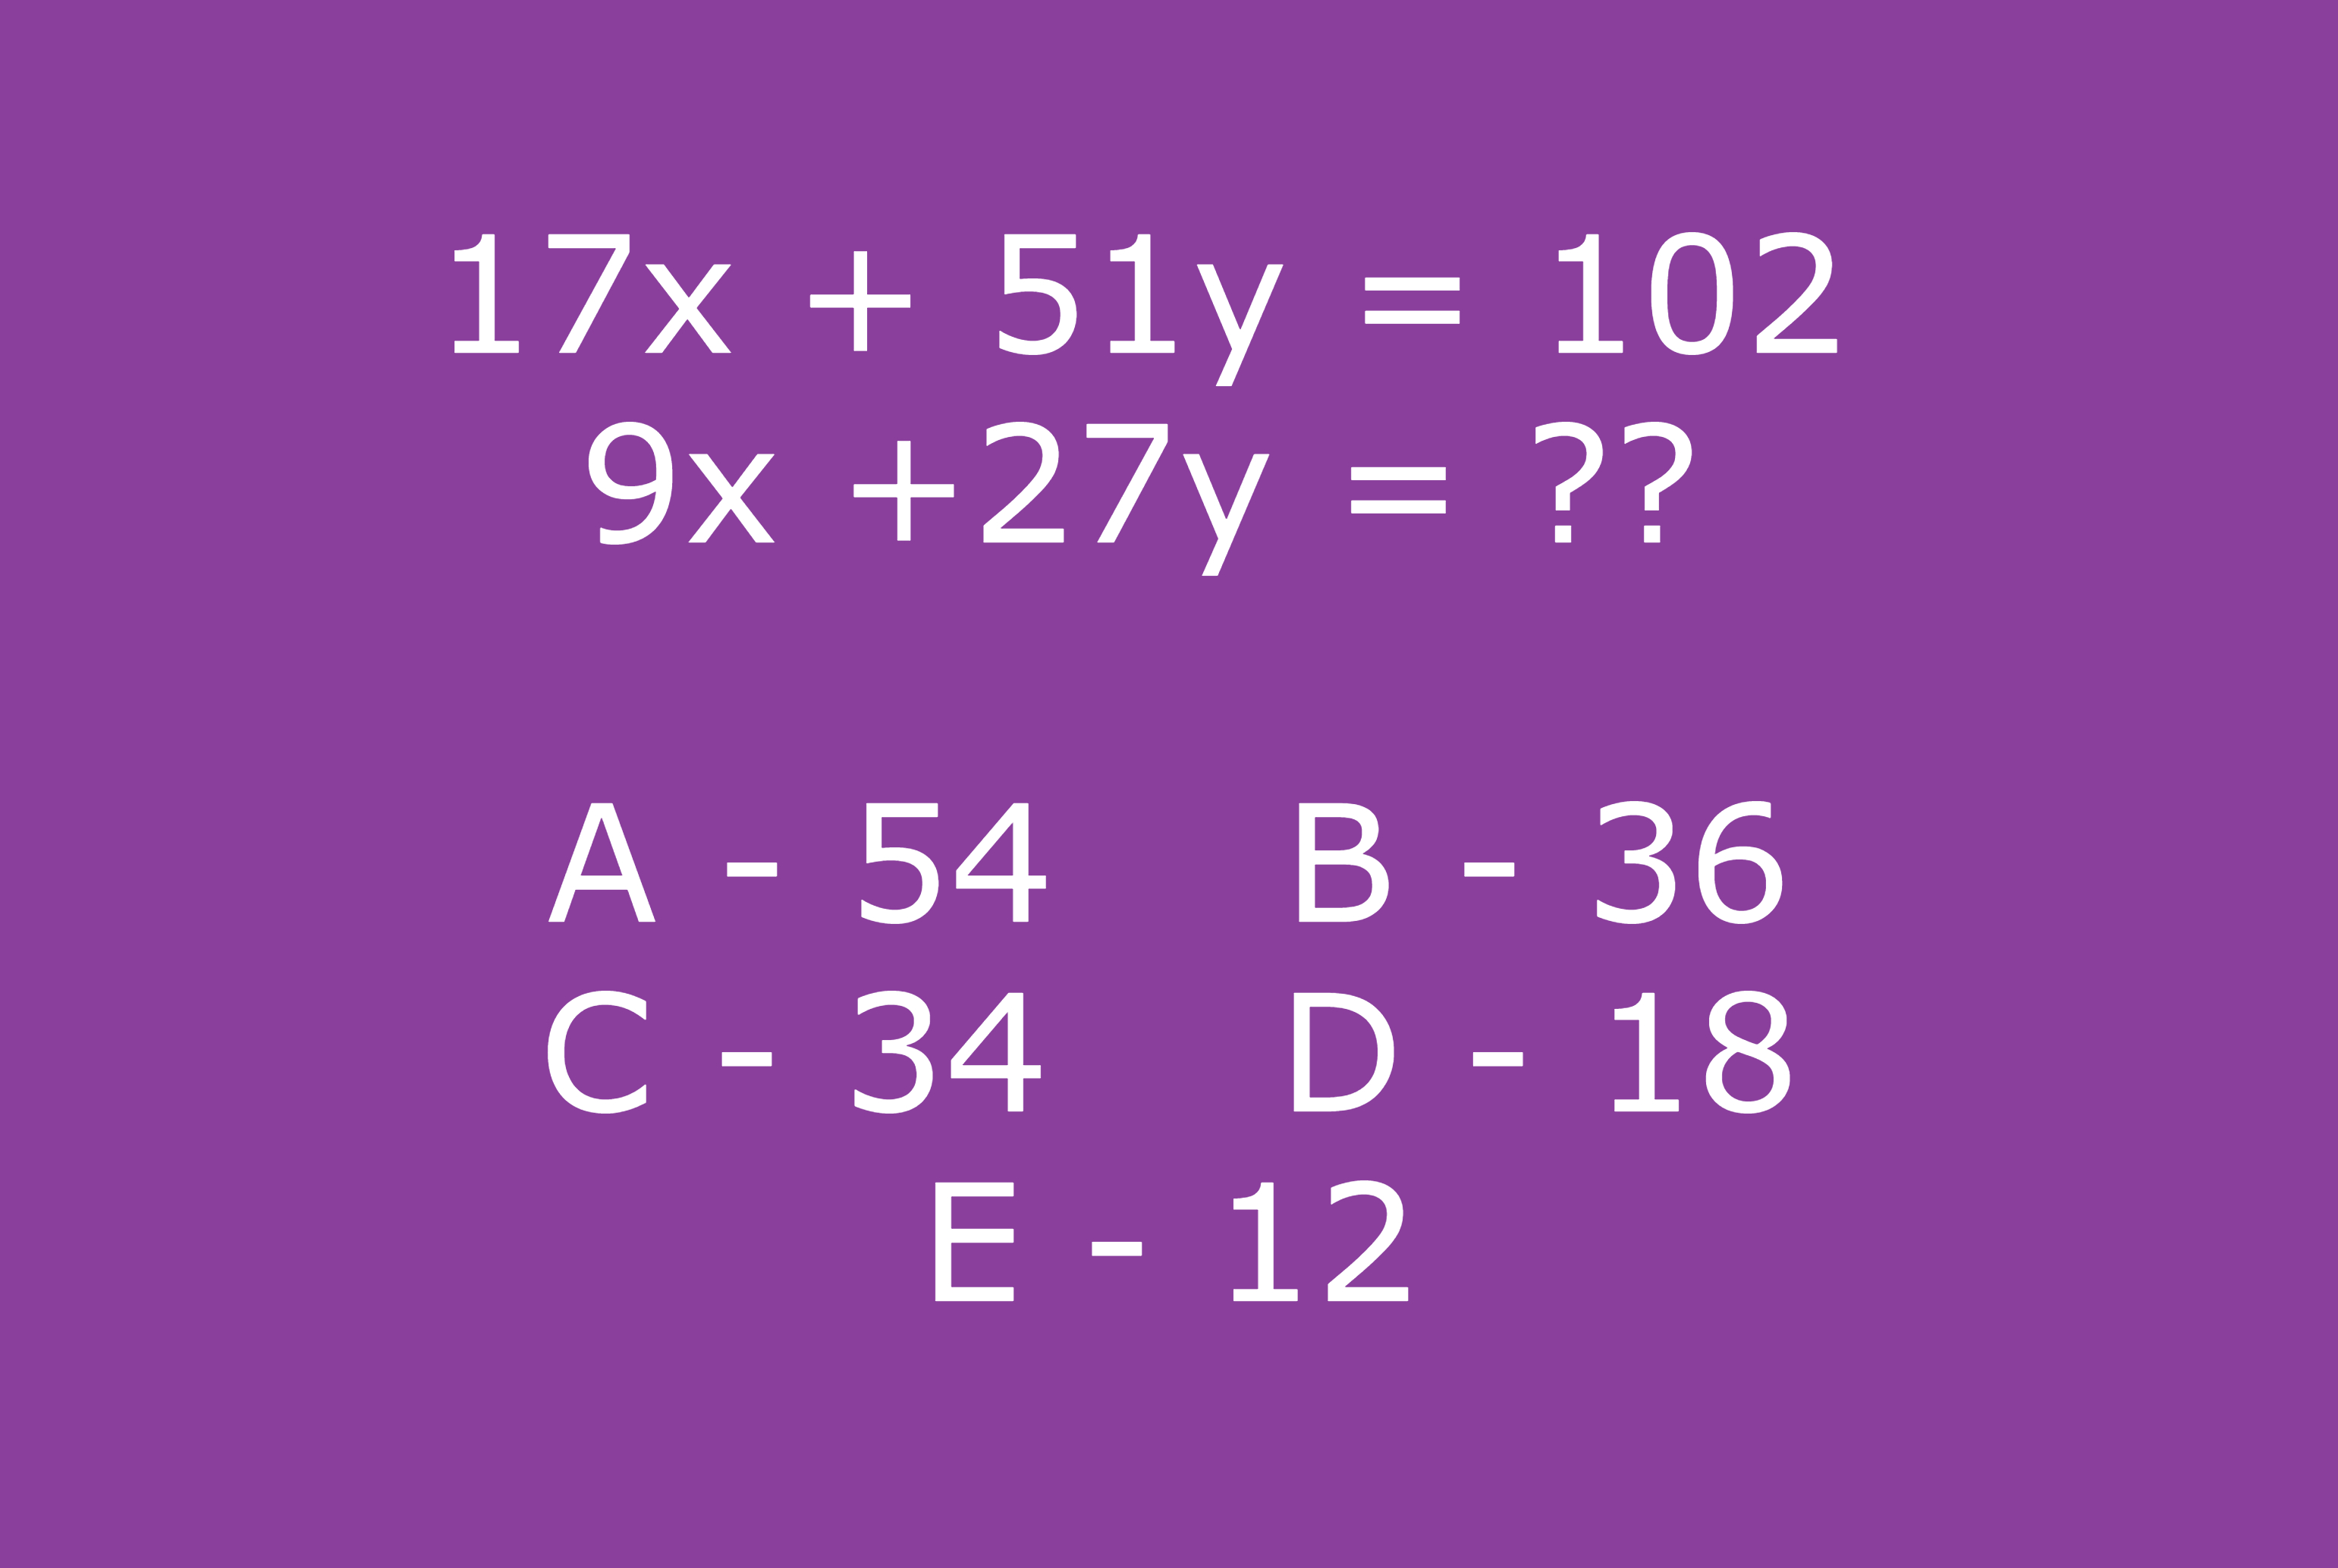 kangur matematyczny. to zadanie było jednym z trudniejszych. a ty potrafisz je poprawnie rozwiązać?